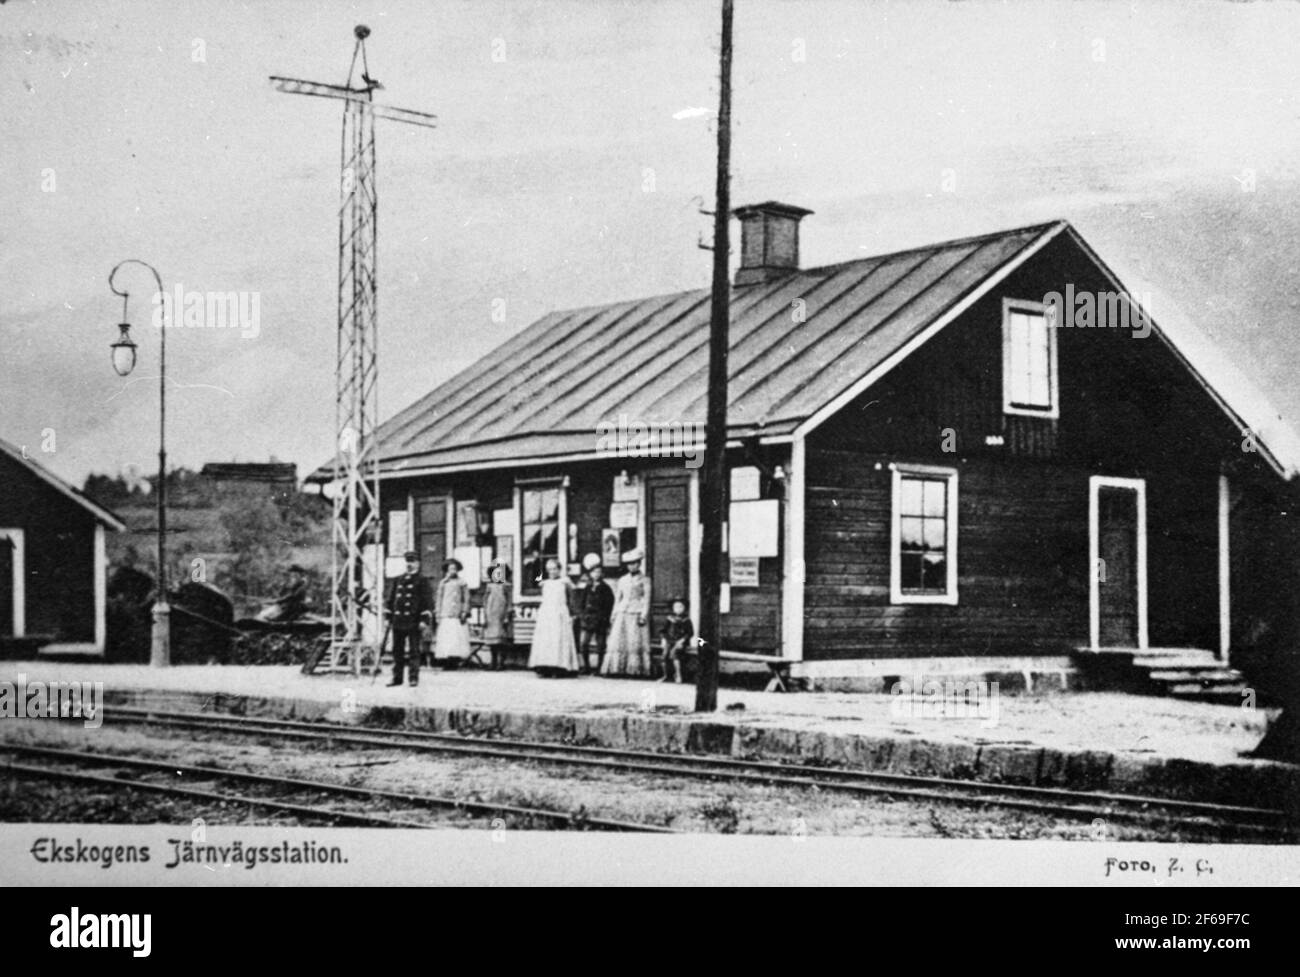 Postkarte mit Motiven vom Bahnhof Ekskogen. An der Semaphore der Stationsleiter, möglicherweise Carl Andersson oder O P Nordahl. Stockfoto